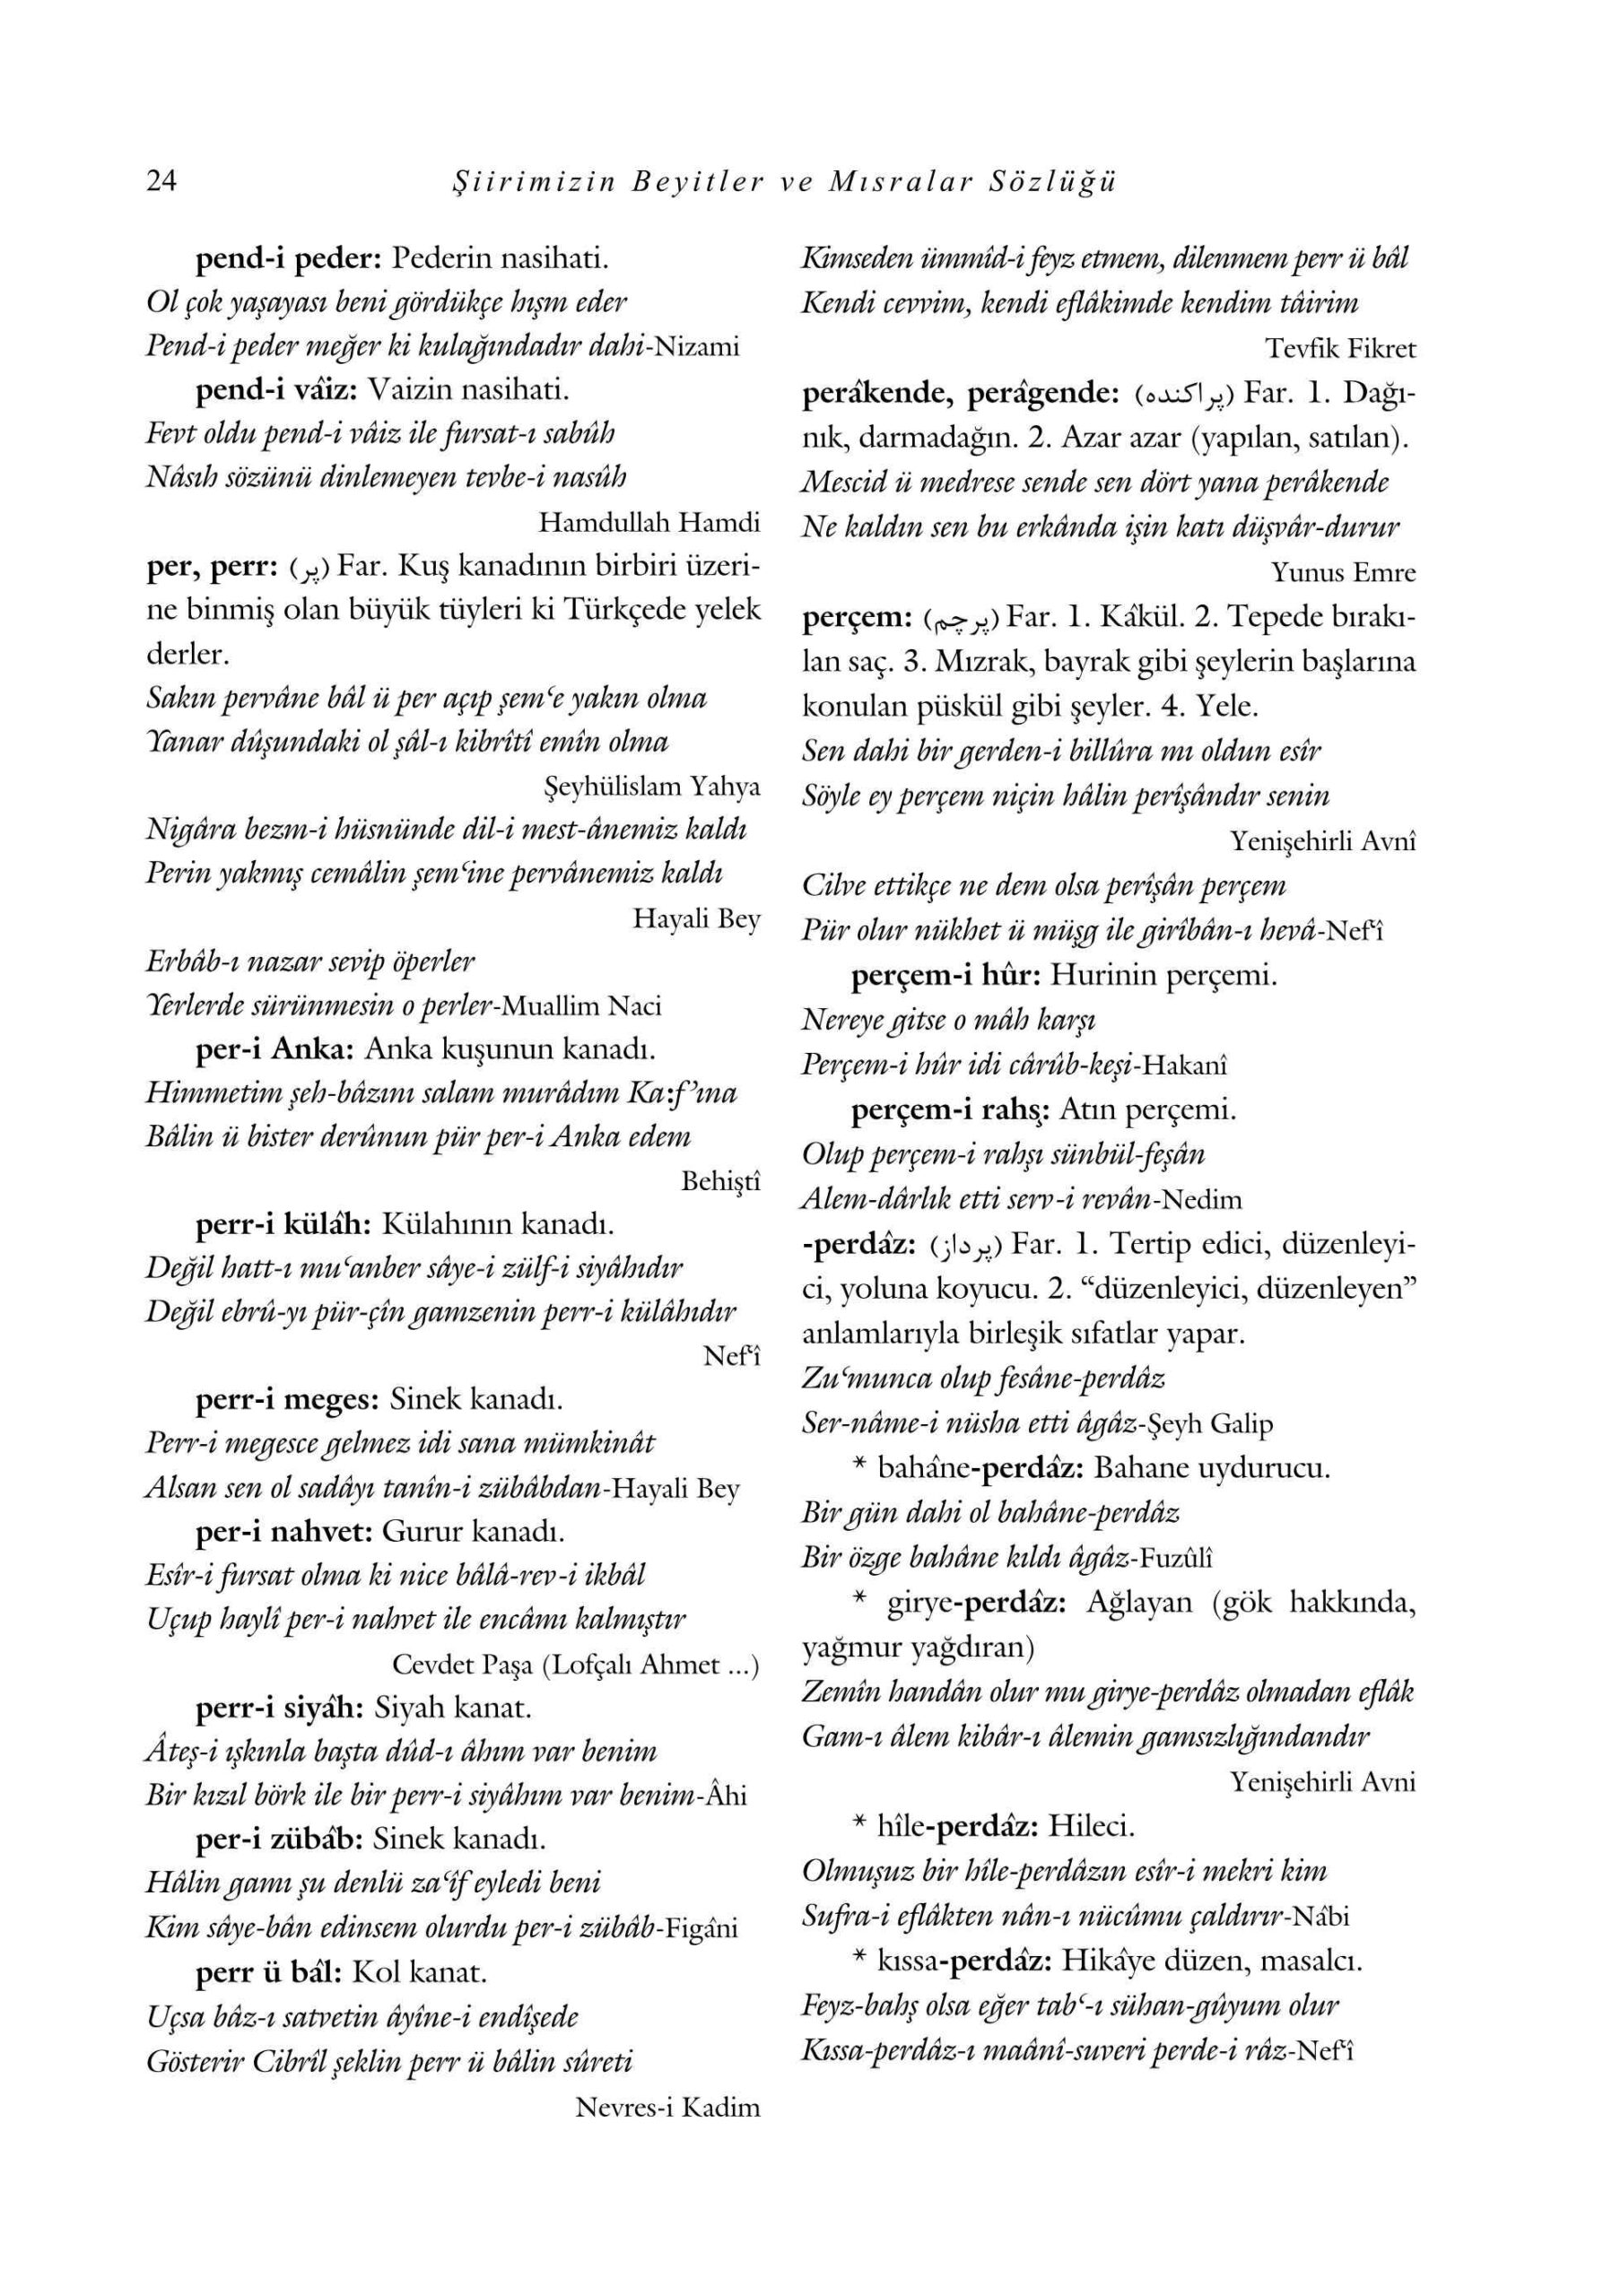 M Ata Catikkas - Siirimizin Beyitler ve Misralar Sozlugu-3- SutunYayinlari.pdf, 701-Sayfa 